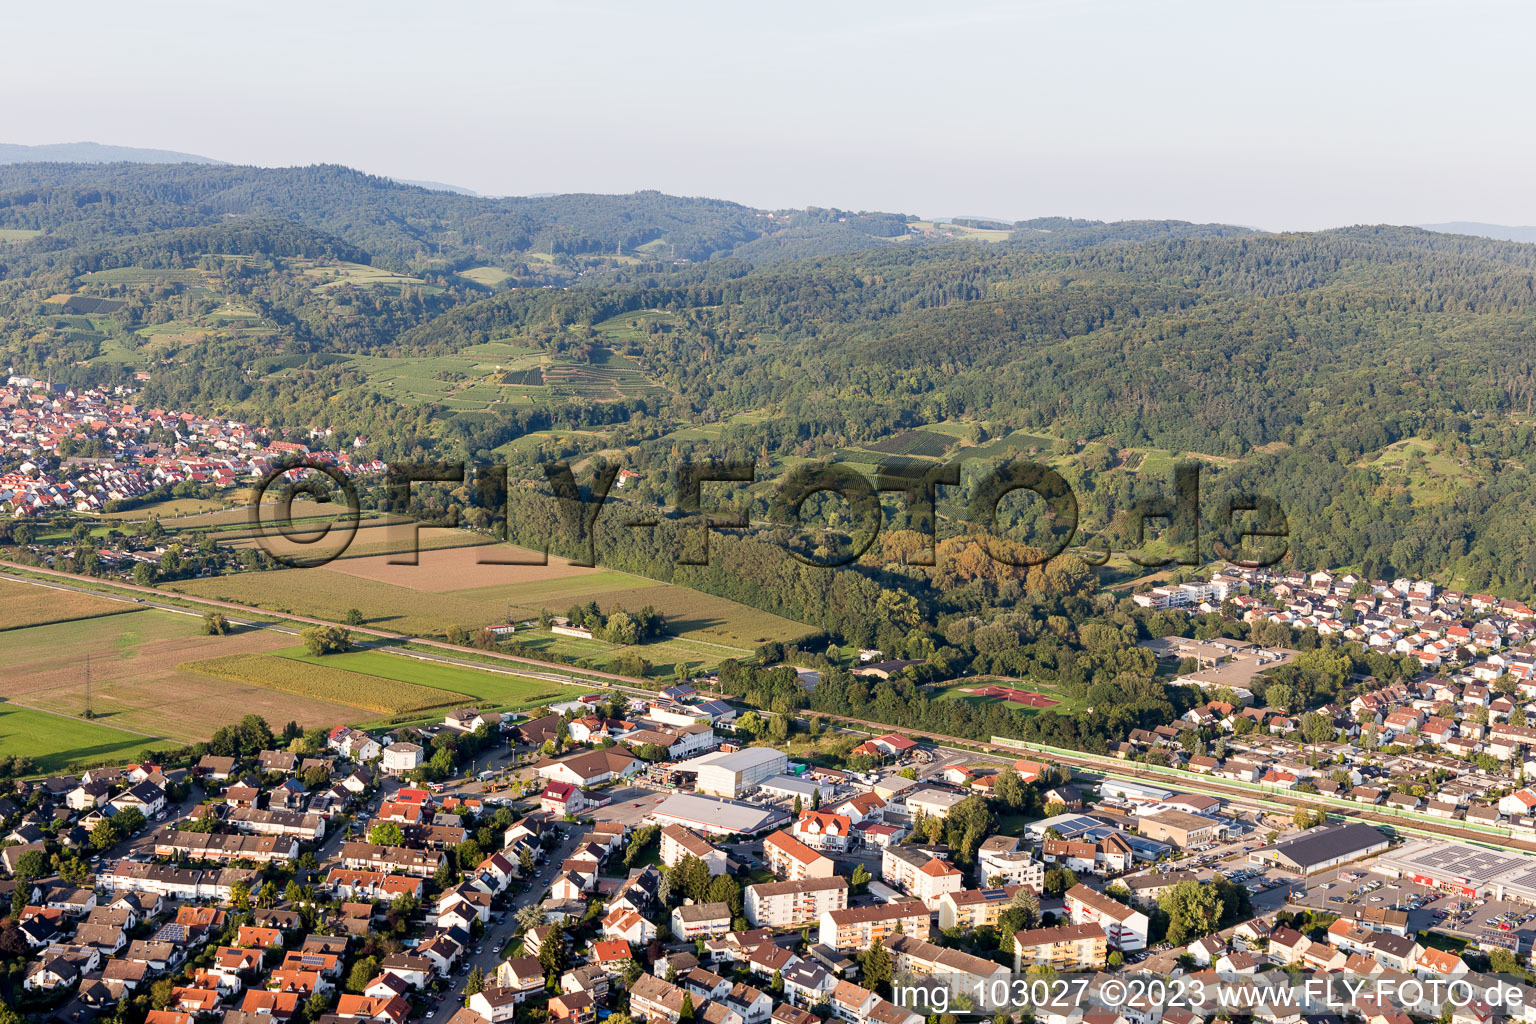 Hemsbach dans le département Bade-Wurtemberg, Allemagne vu d'un drone